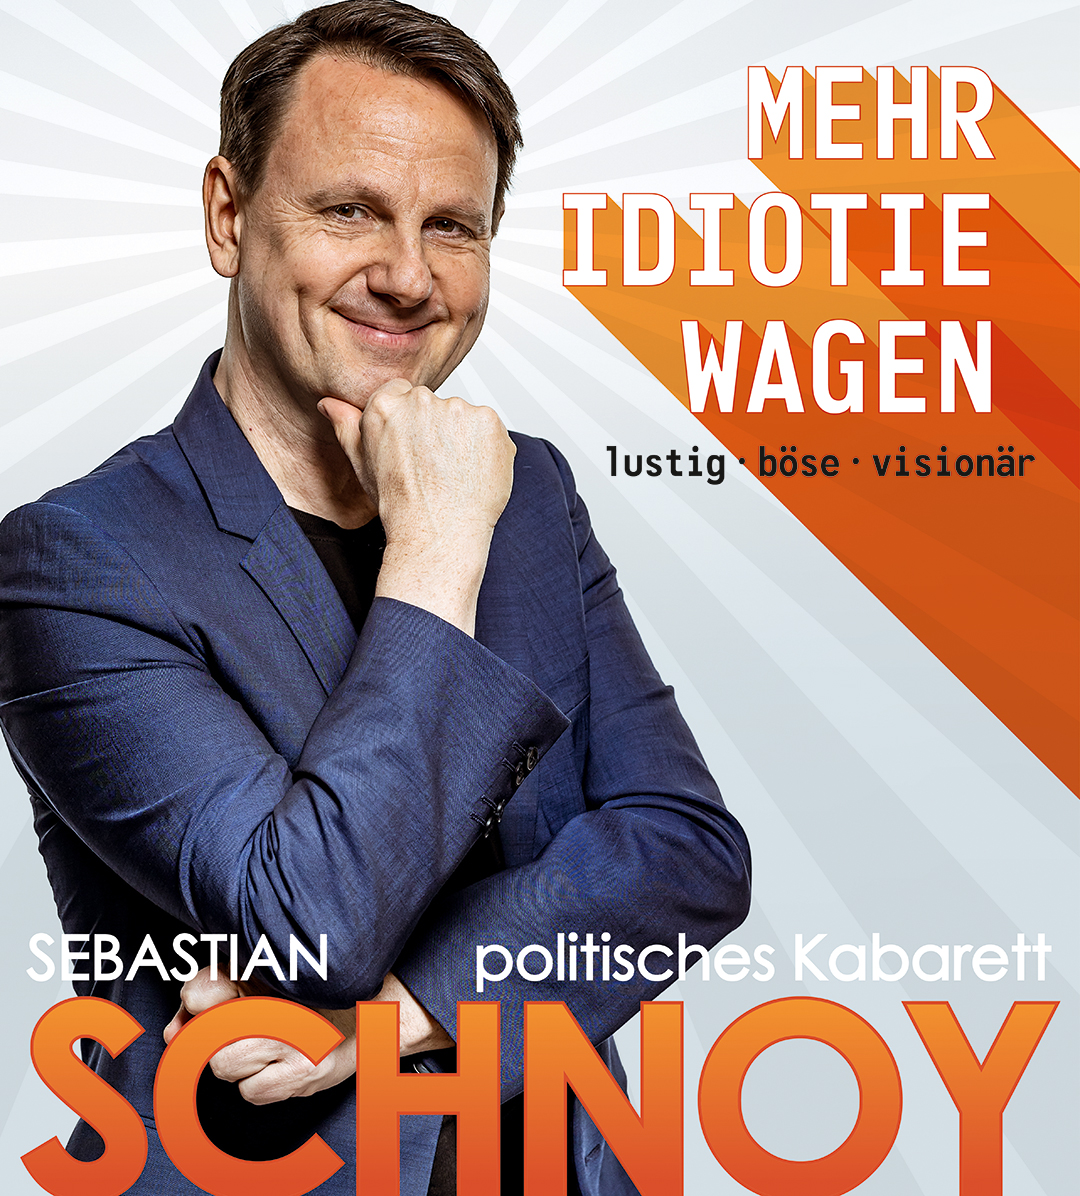 Sebastian Schnoy - Mehr Idiotie wagen - Best of